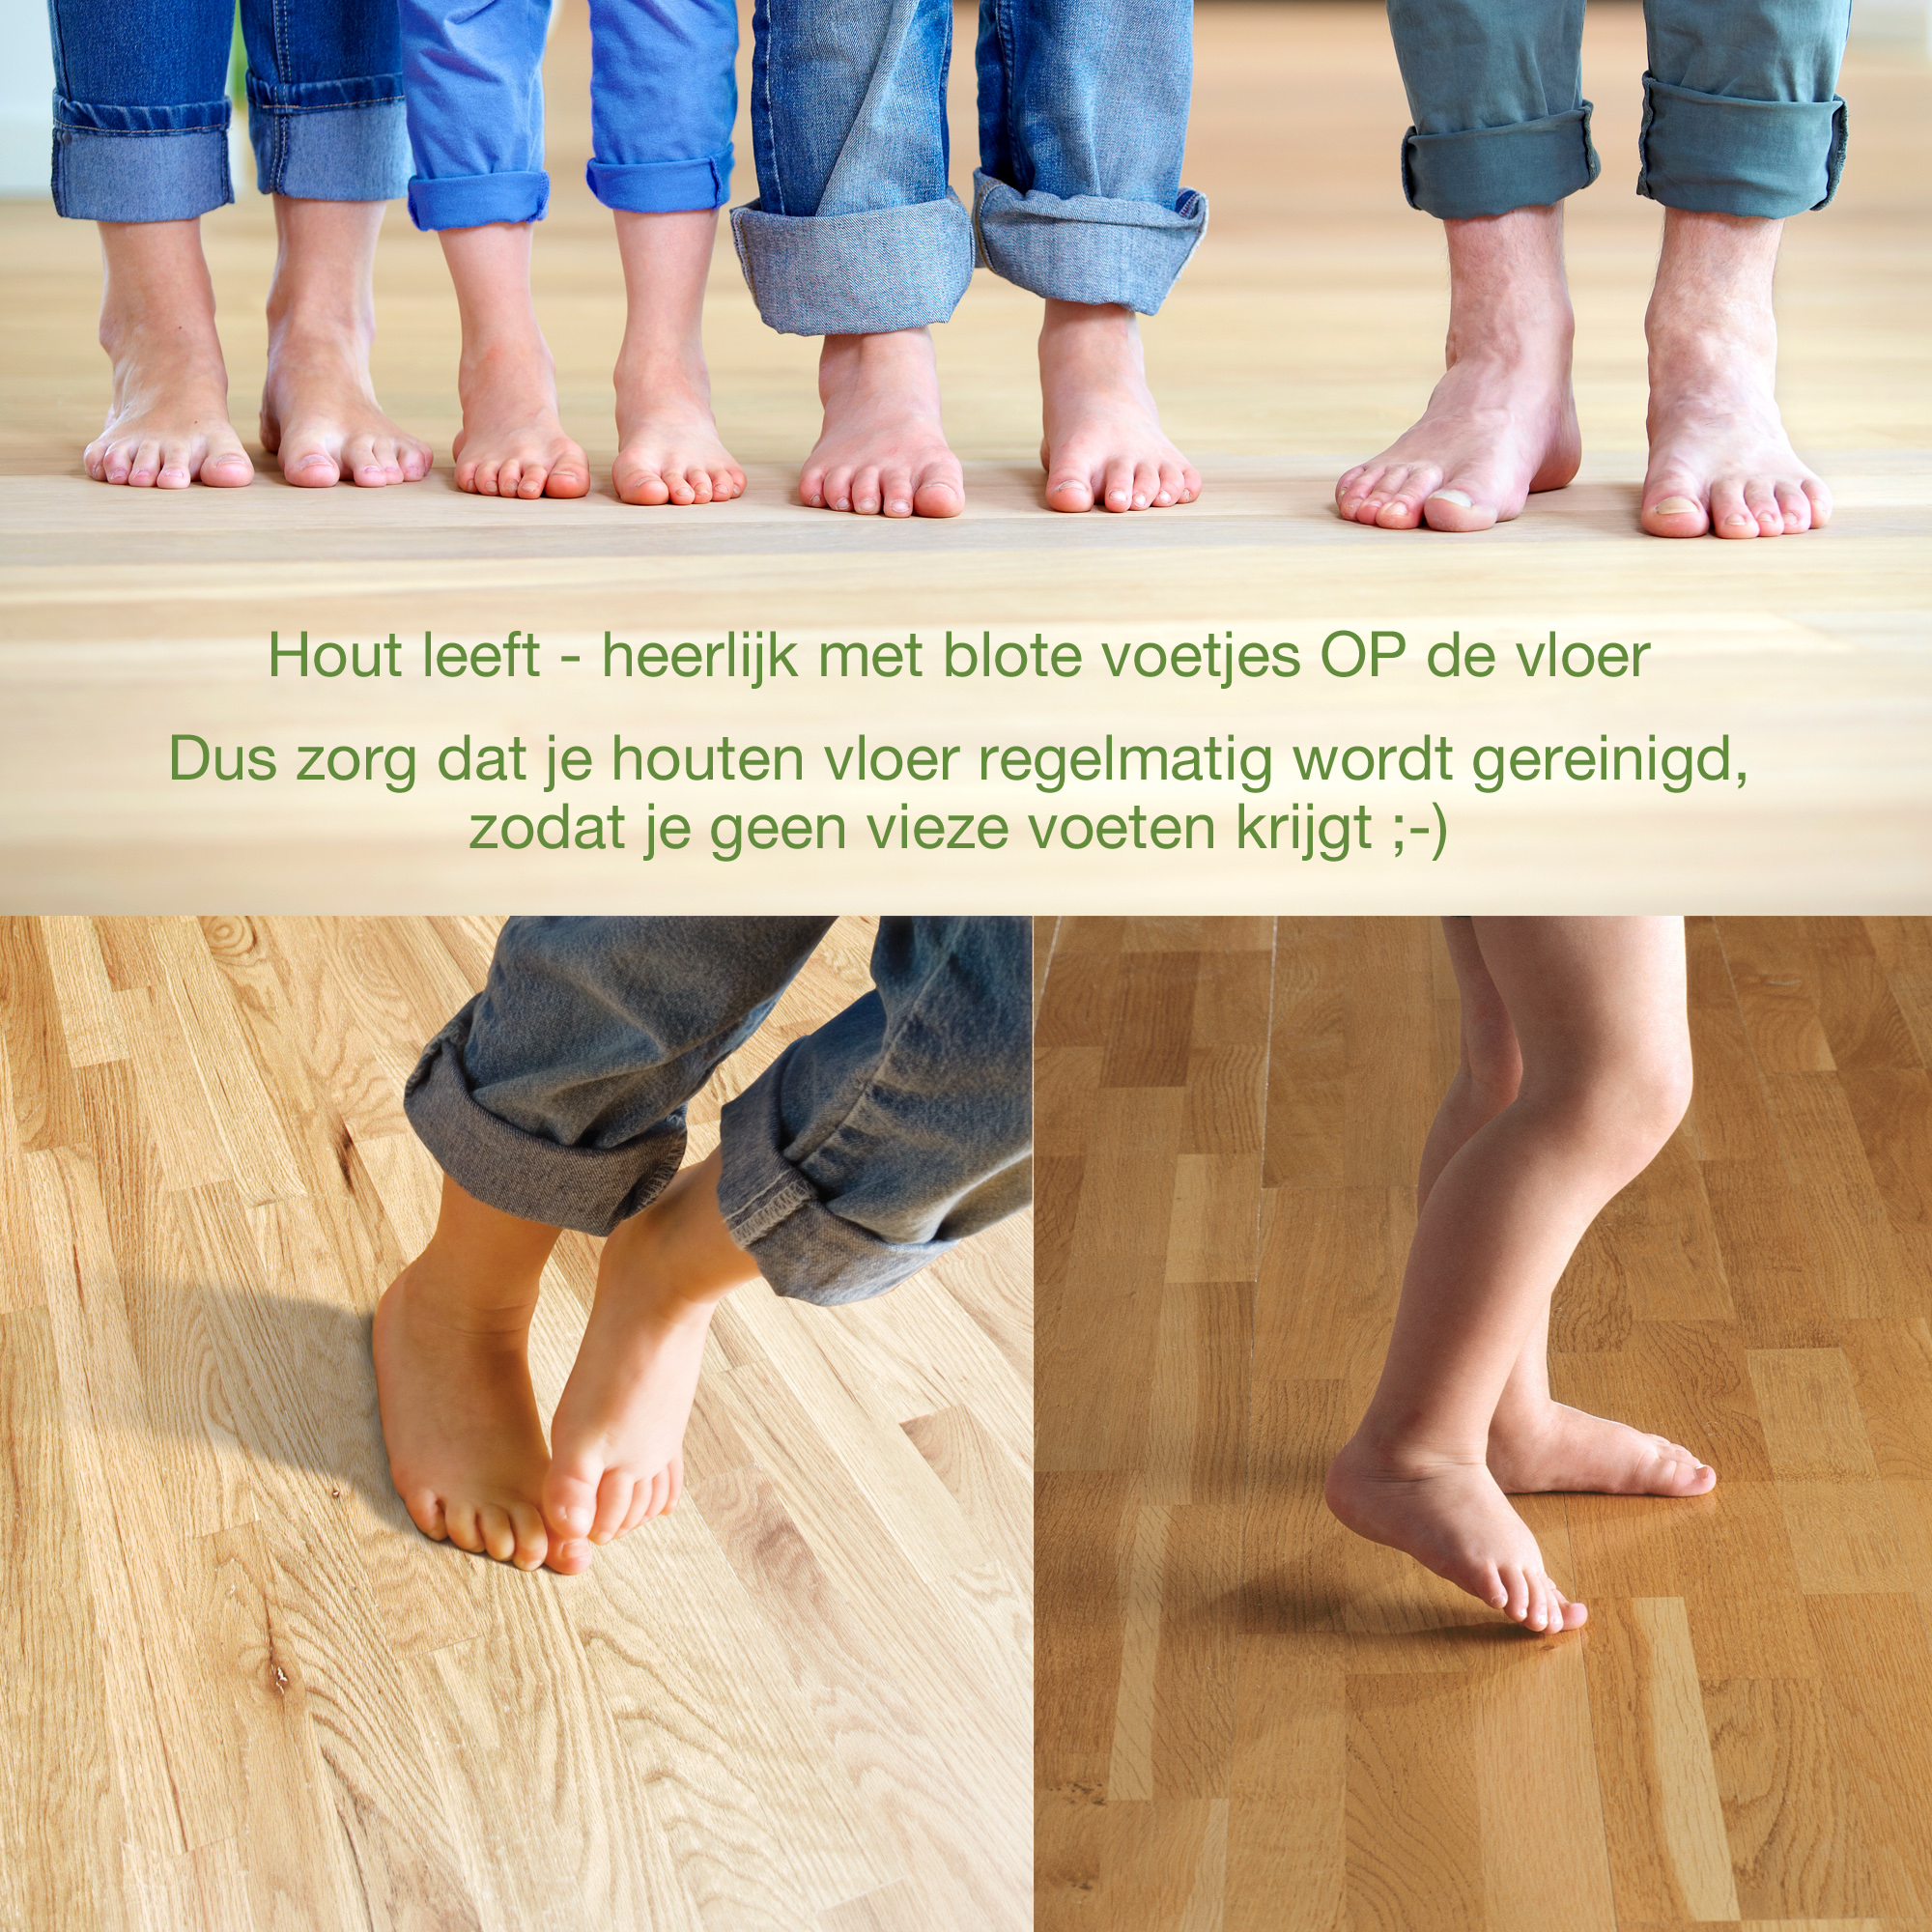 Tips_voor_de_houten_vloer/Voeten_op_de_vloer.jpg